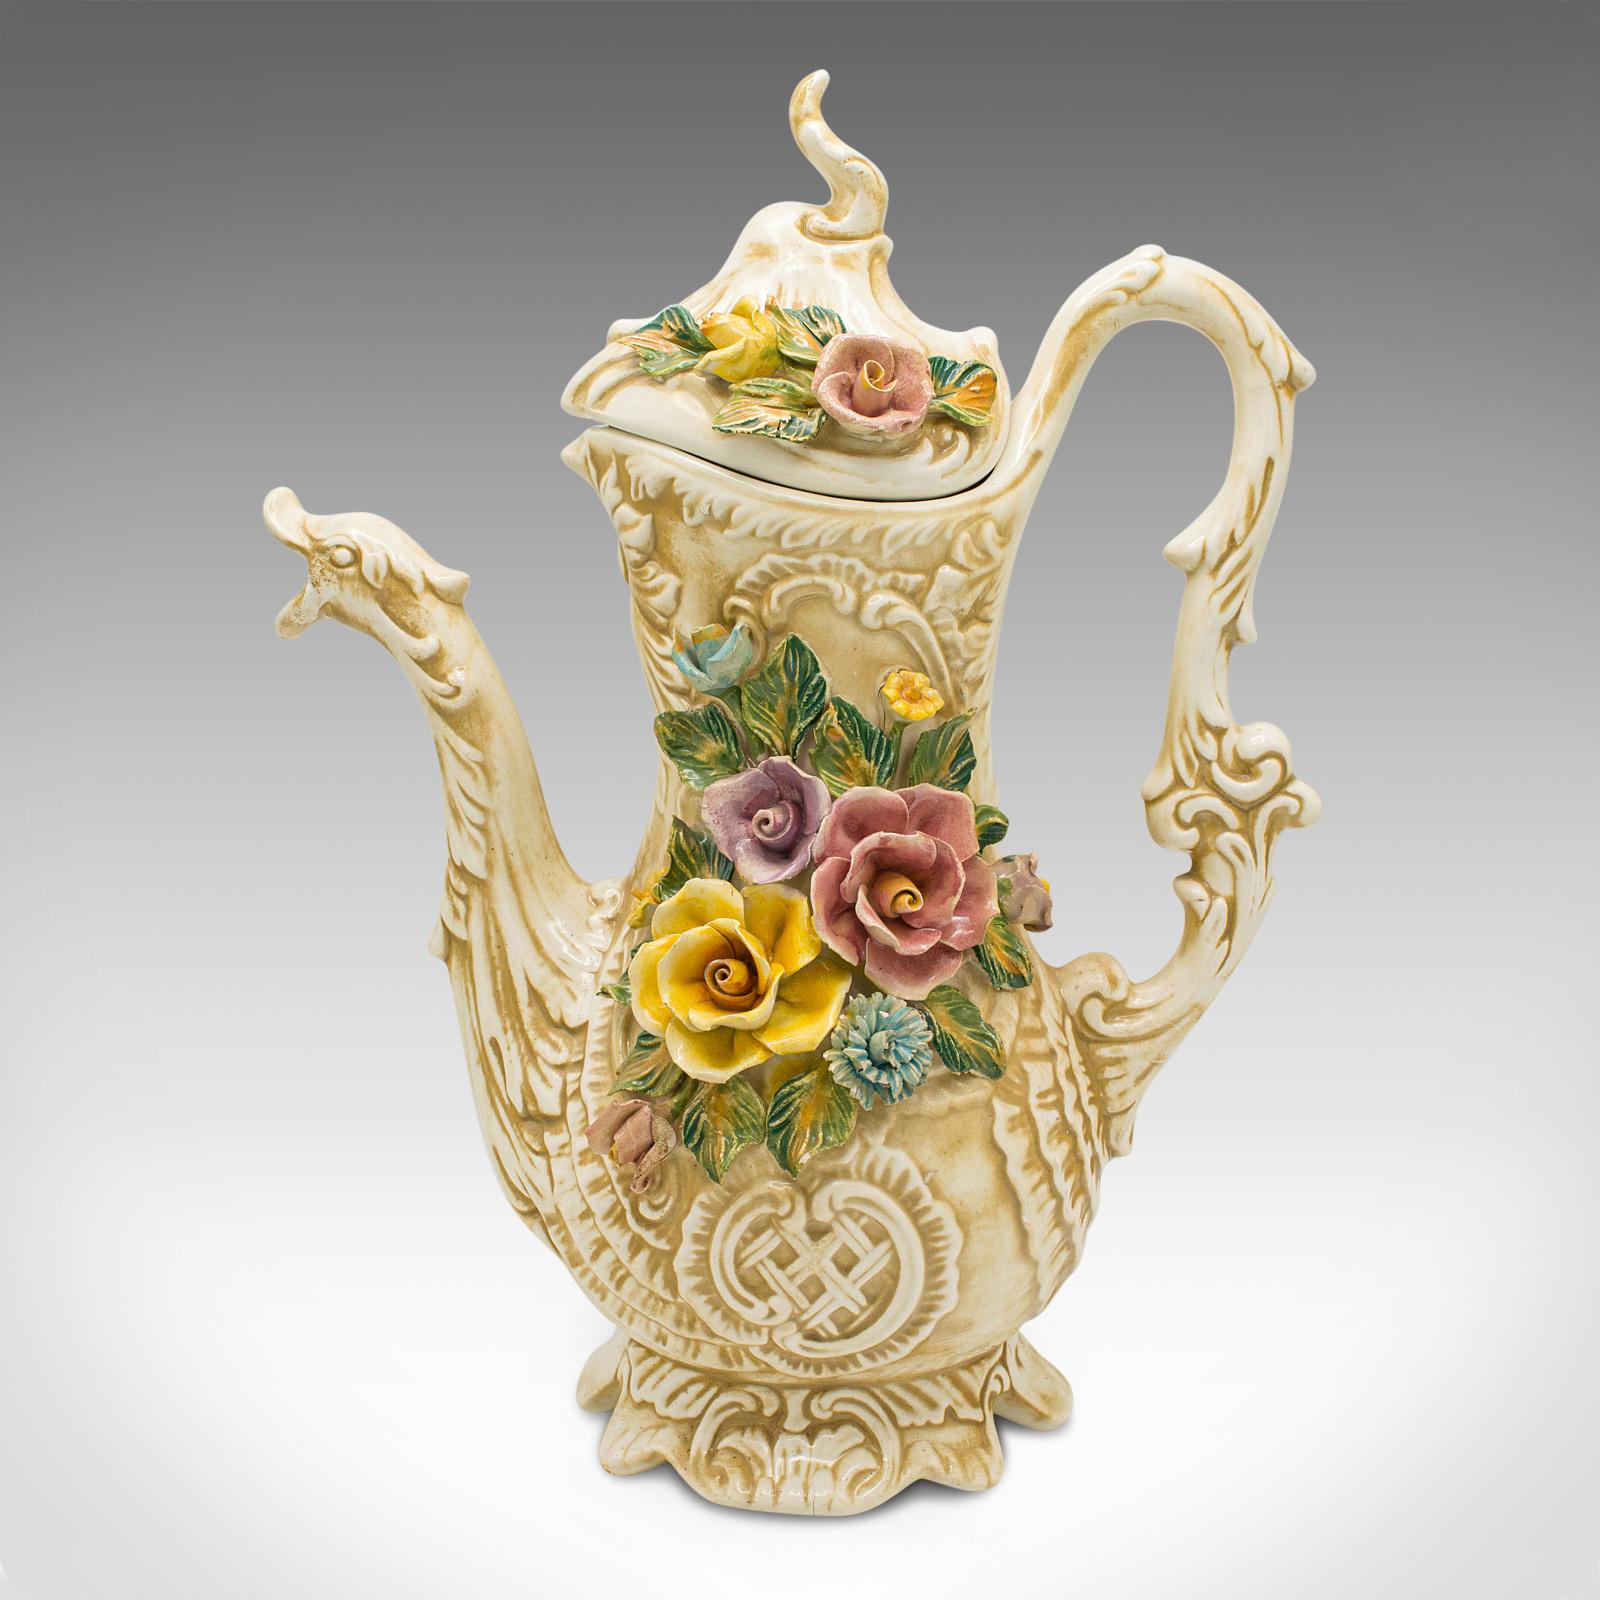 Dies ist eine antike florale verkrustete Kanne. Italienische, dekorative Keramikkanne aus dem frühen 20. Jahrhundert, um 1920.

Auffällige italienische Kanne mit ausgeprägtem Blattwerkdekor
Zeigt eine wünschenswerte gealterte Patina und gute